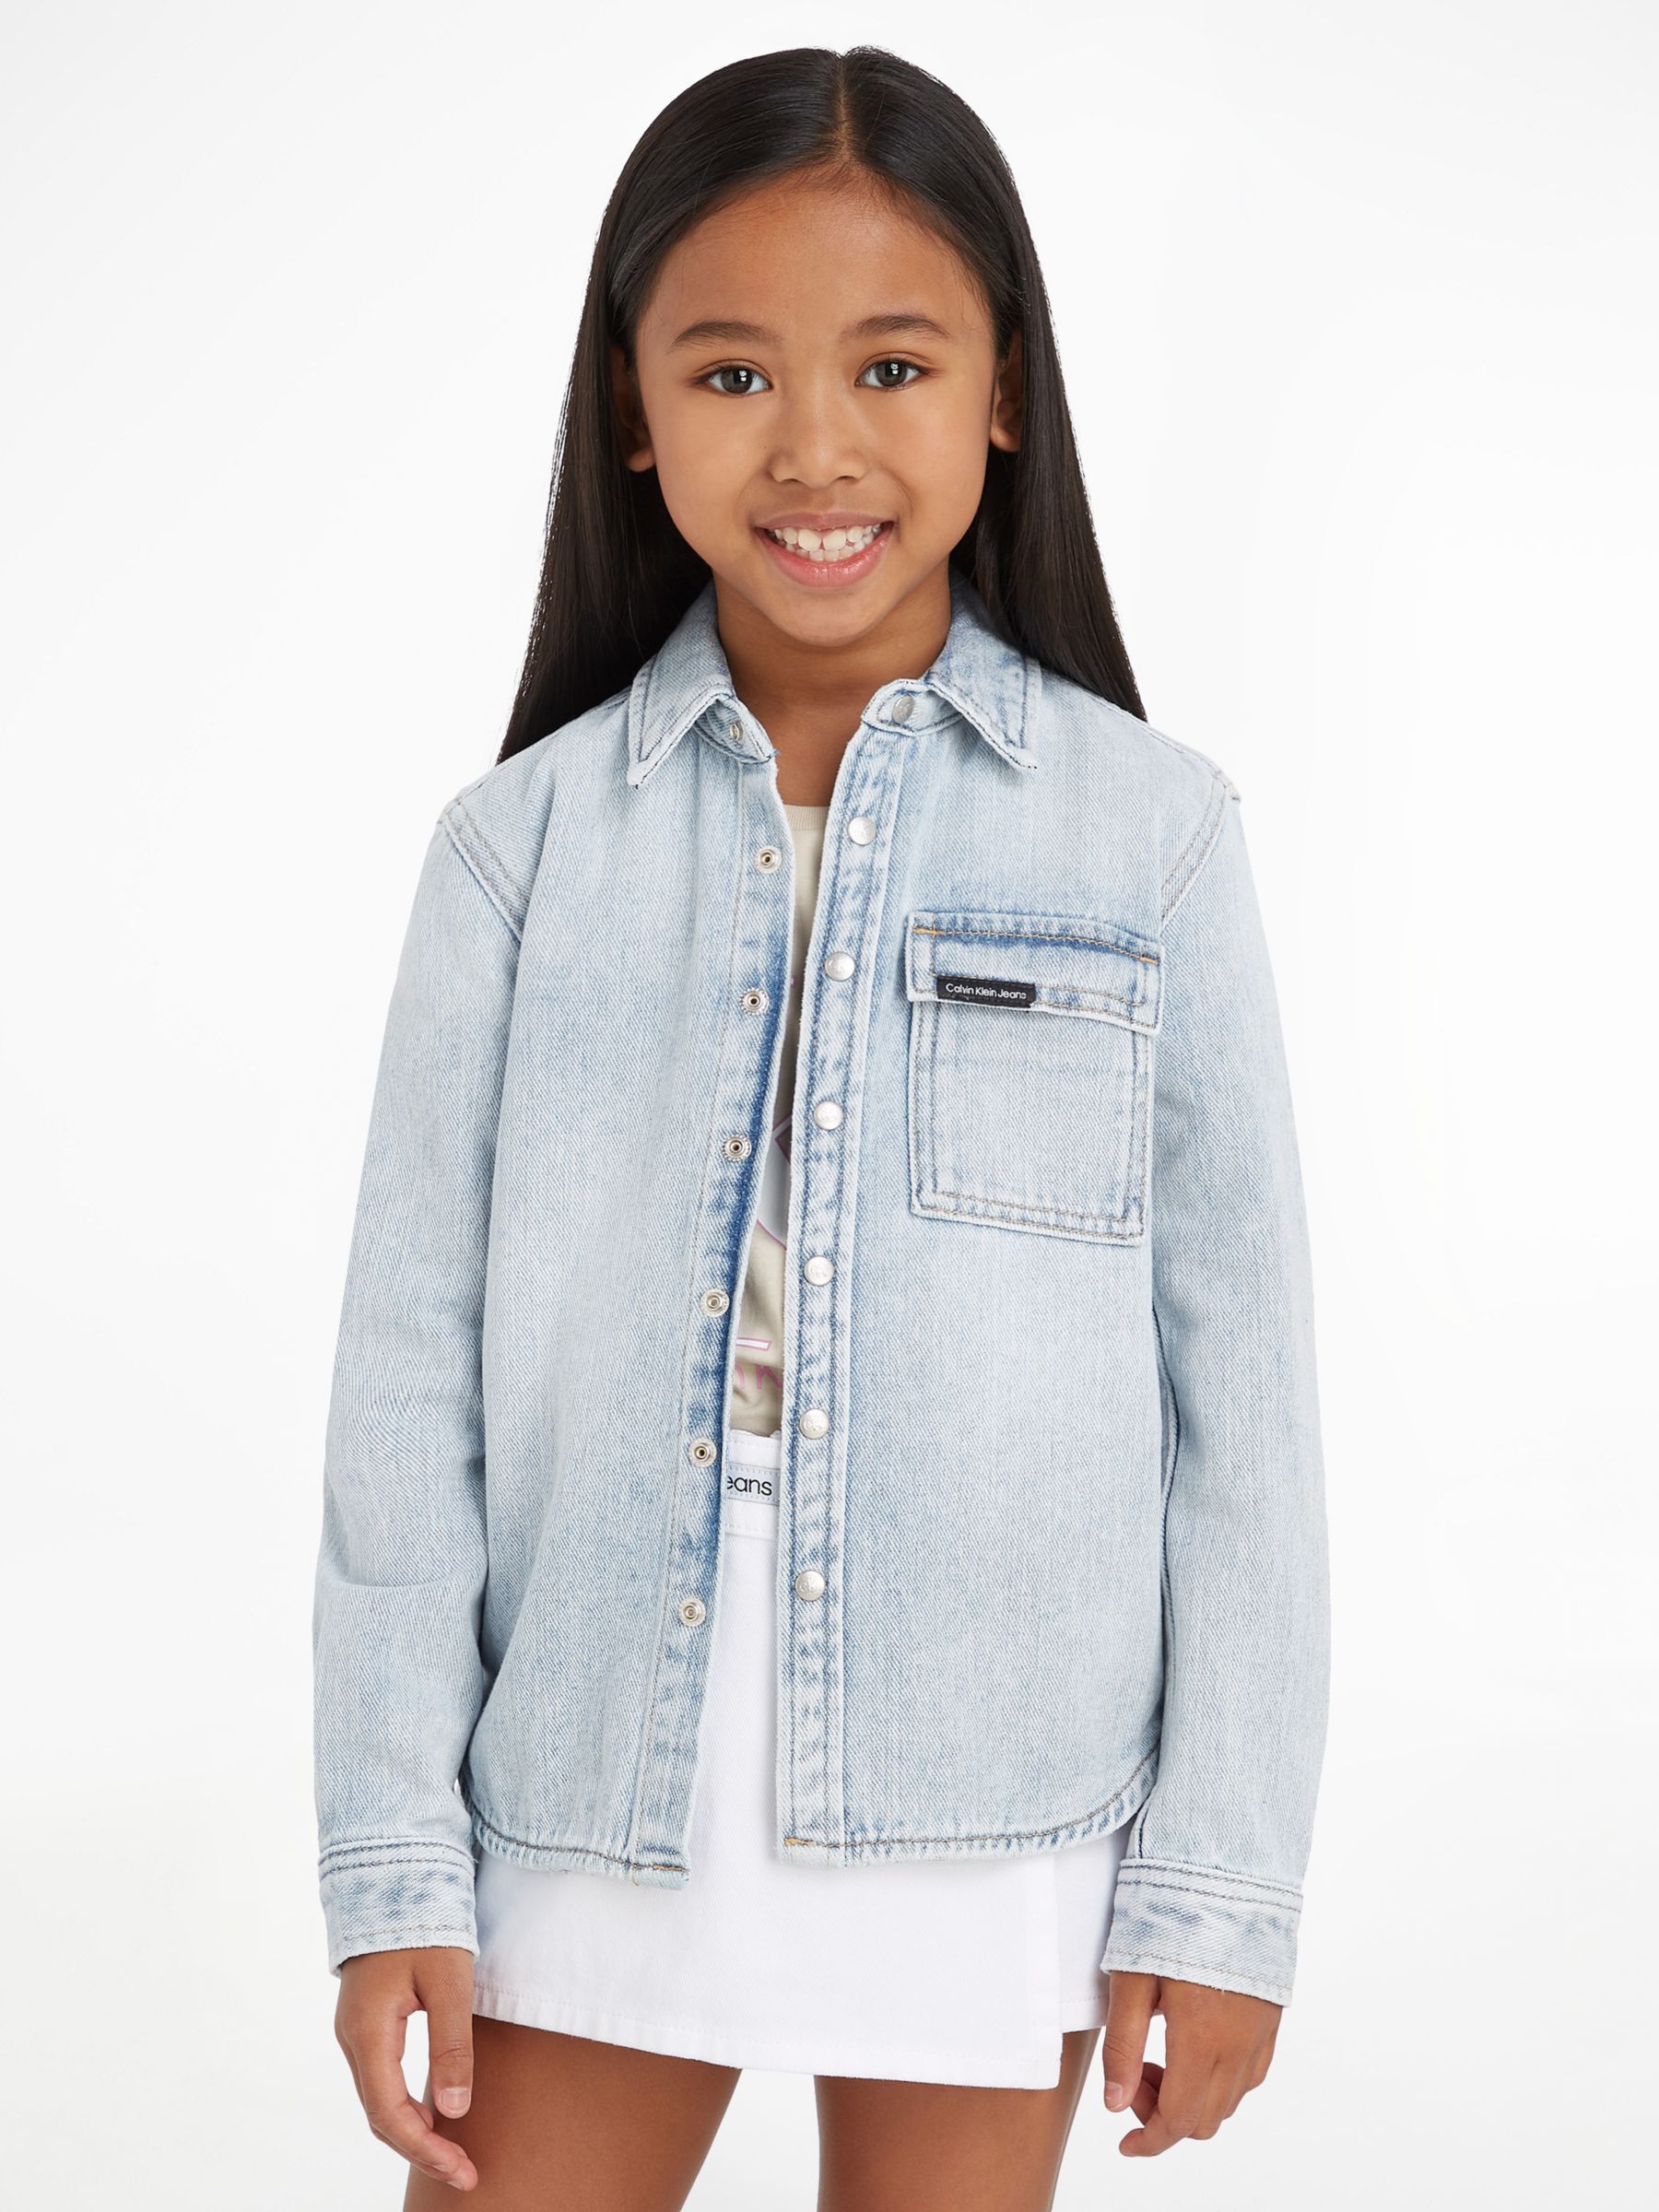 Calvin Klein Jeans Kids' Denim Shirt, Visual Bleach